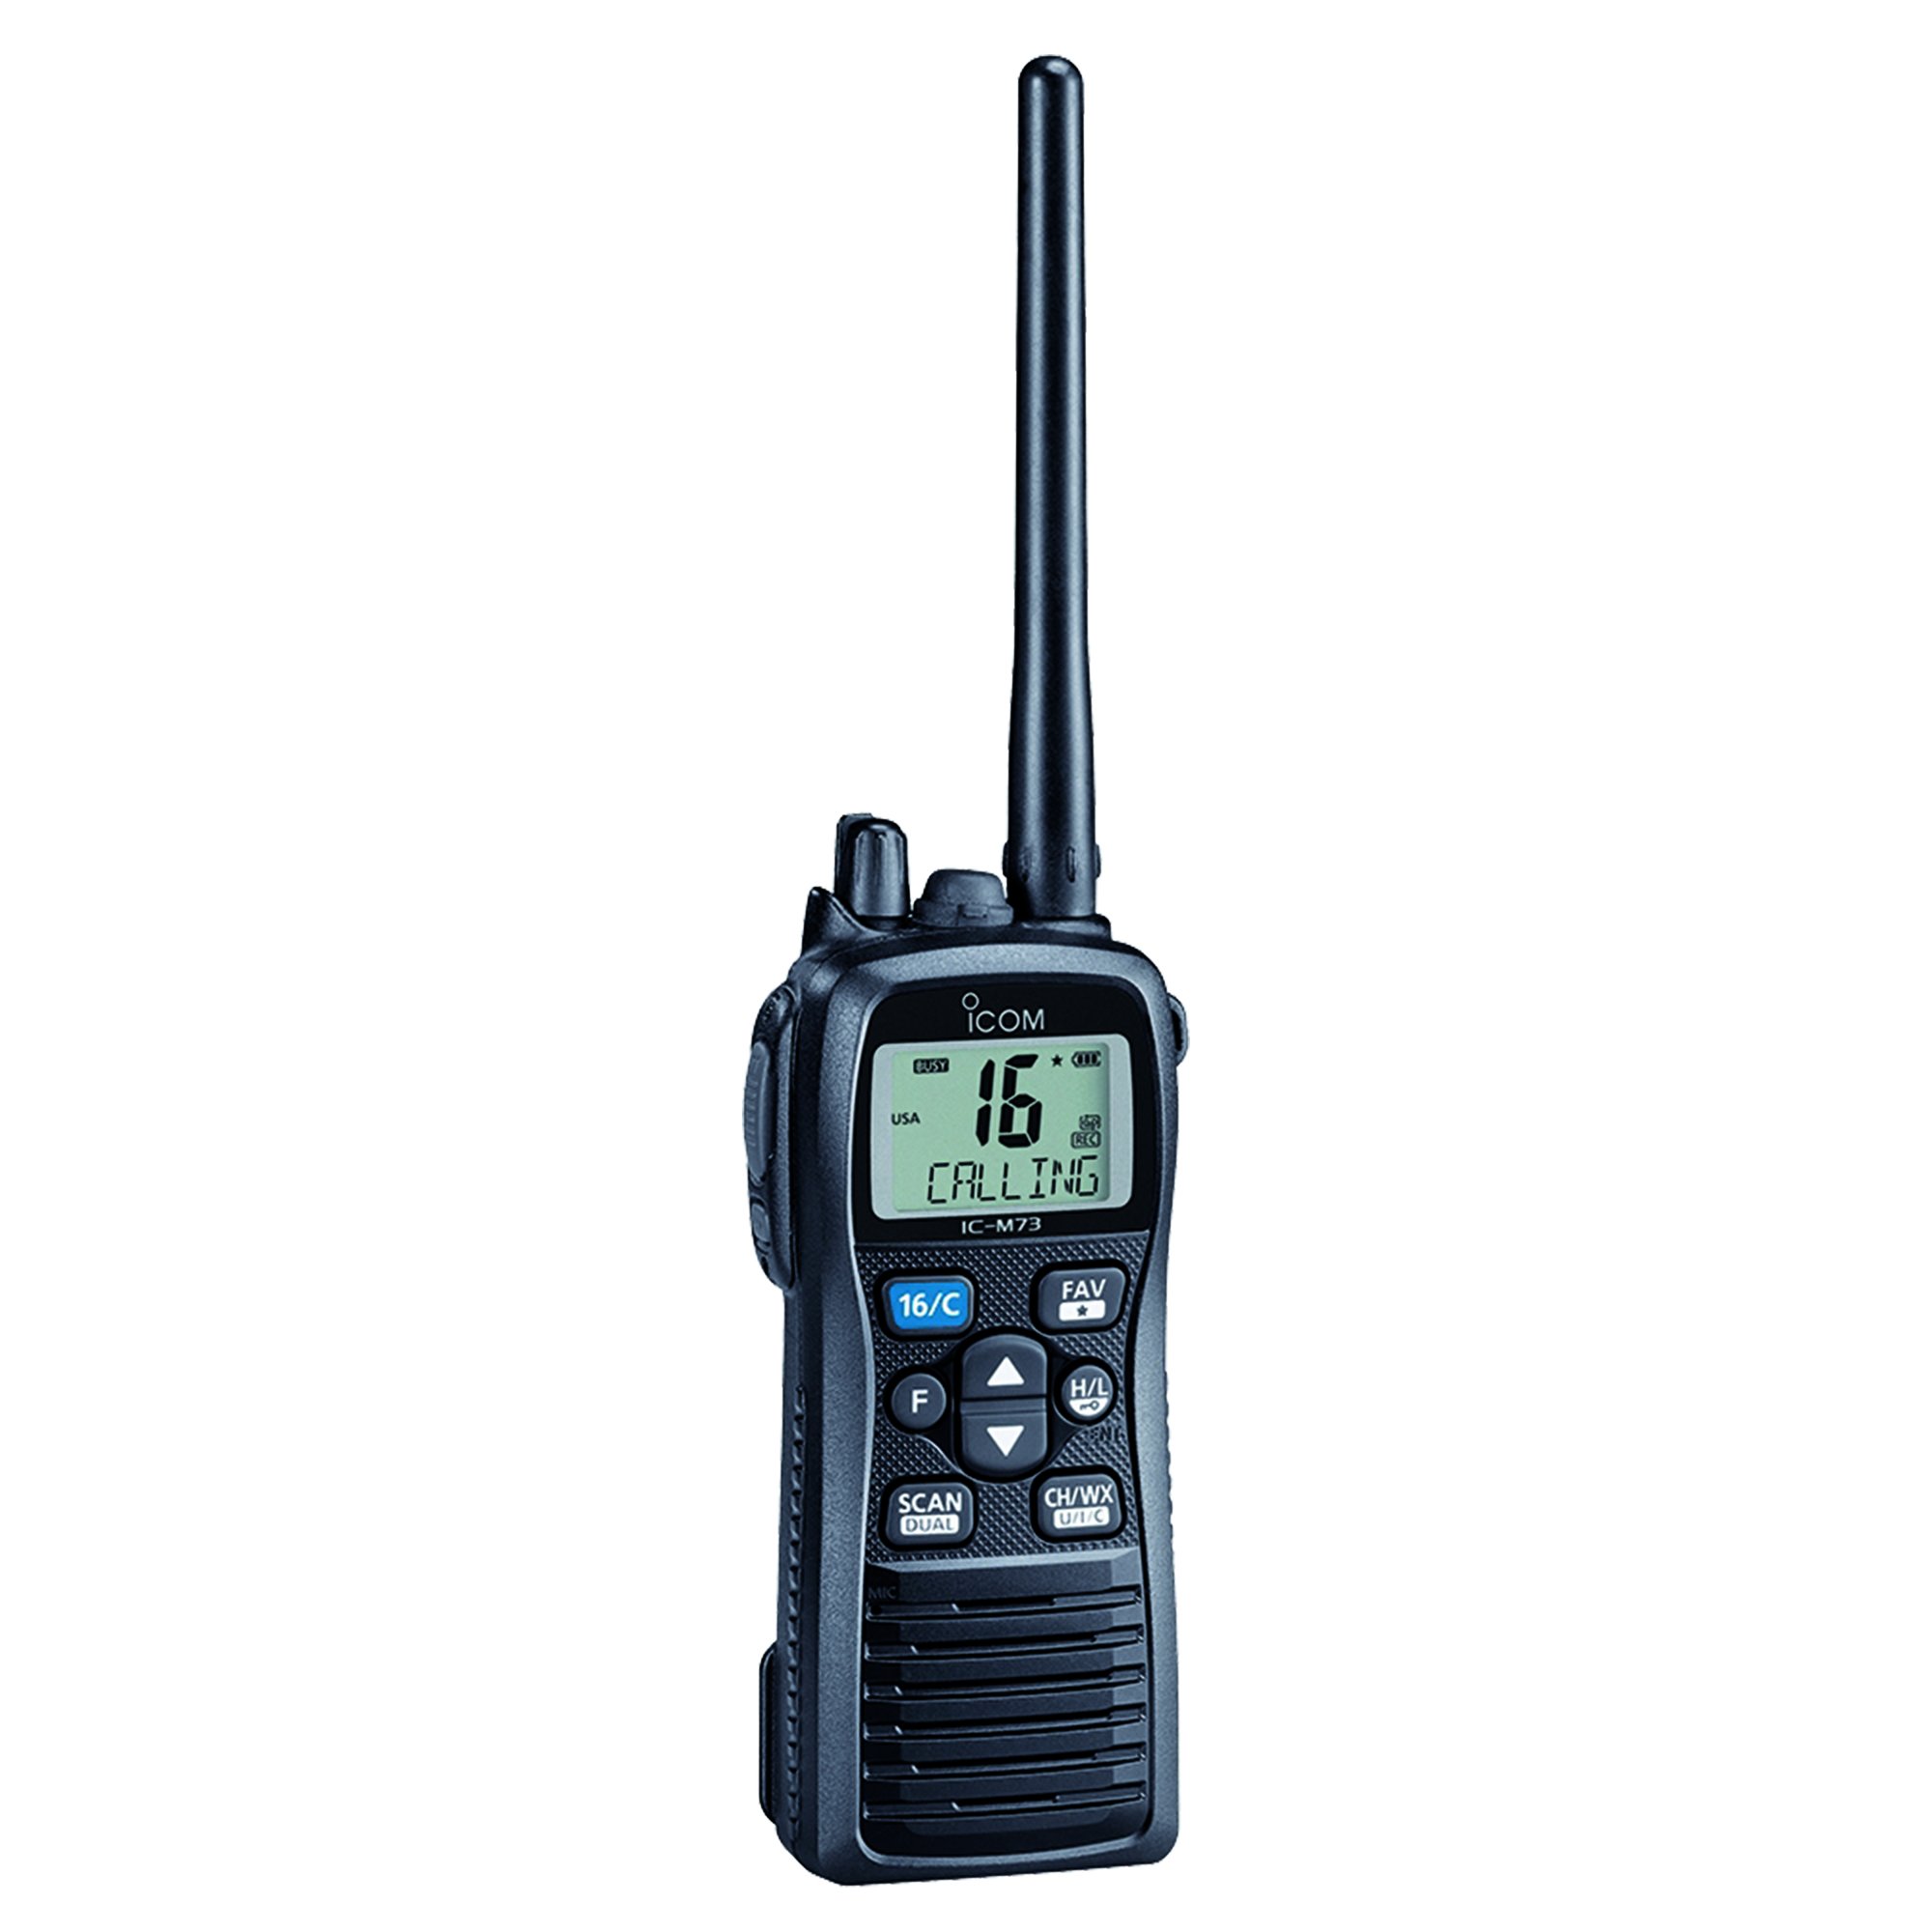 ICOM IC-M73 01 IC-M73 01 ハンドヘルド VHF マリンラジオ、6 ワット